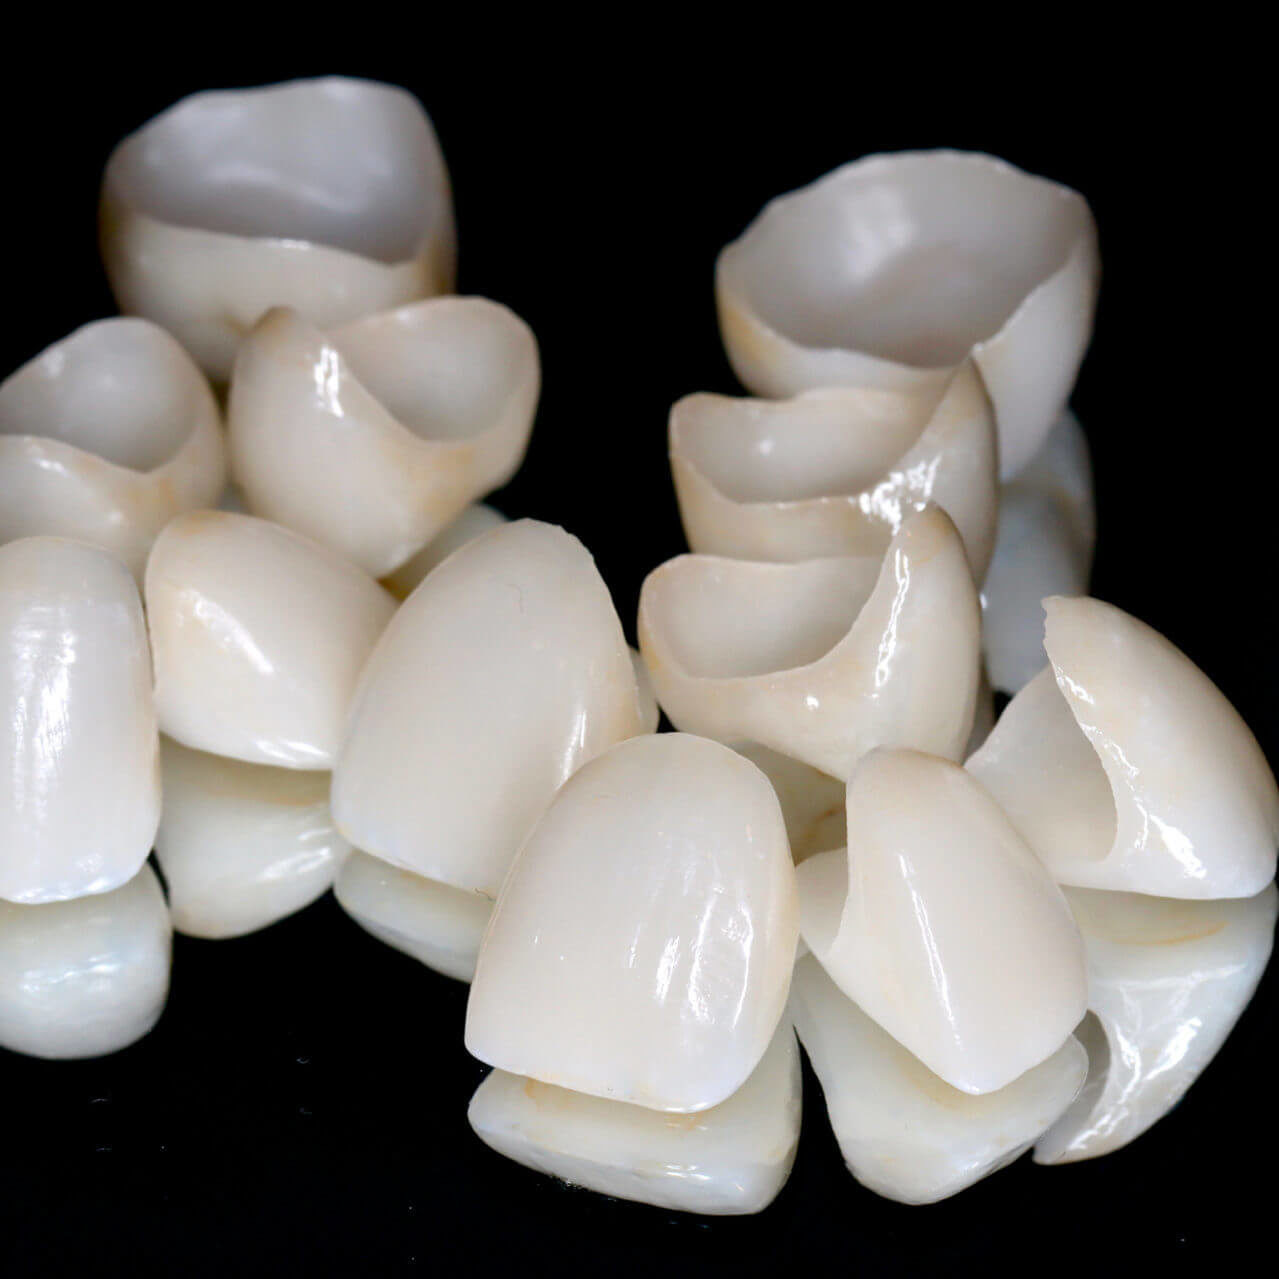 Personalised ceramic dental crowns